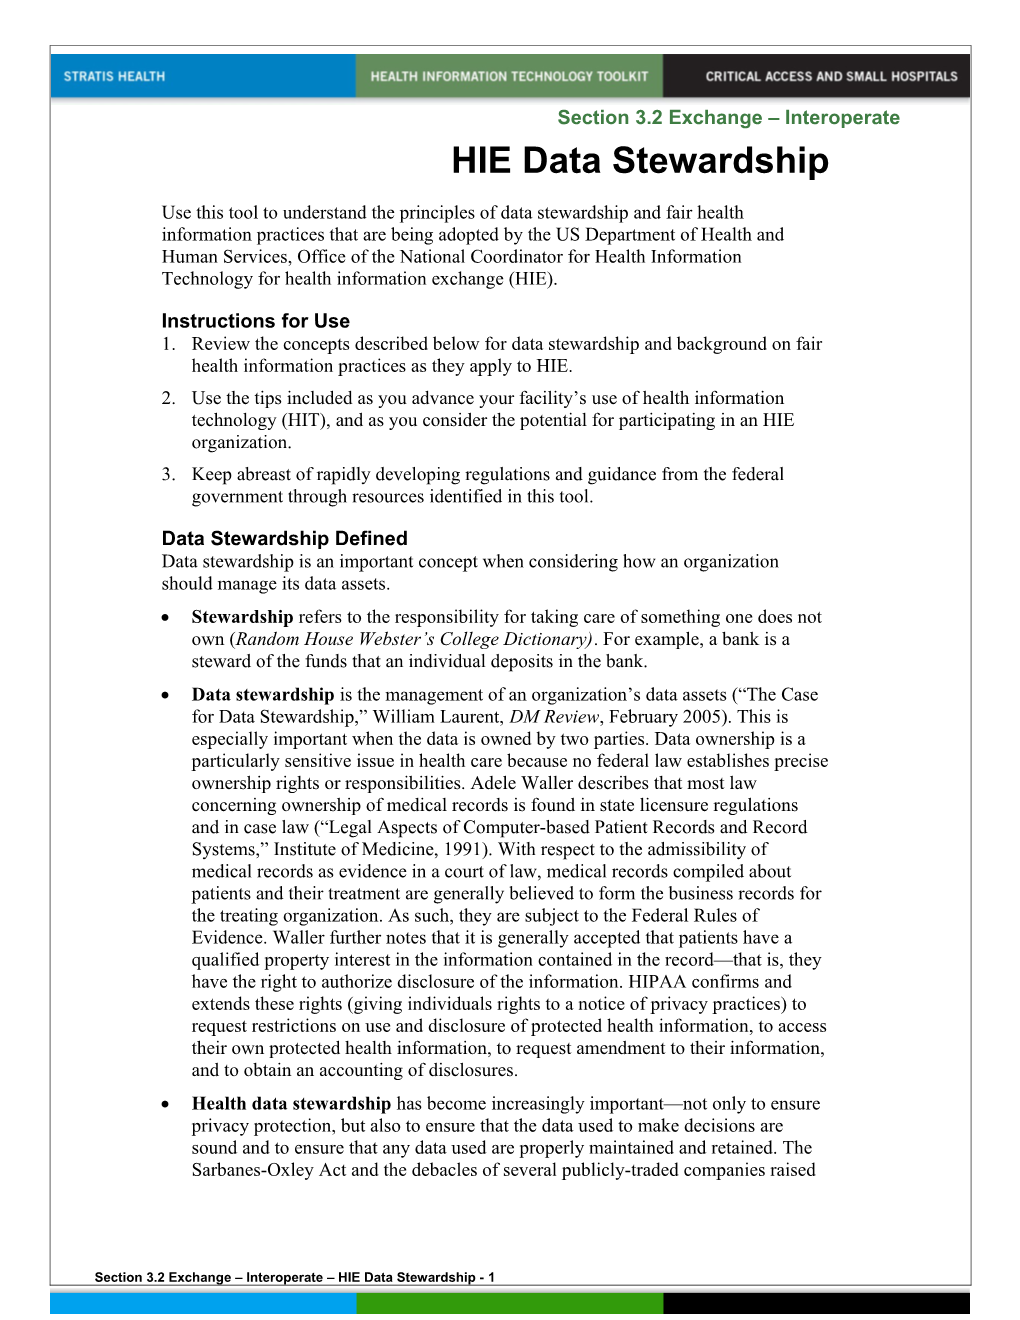 HIE Data Stewardship